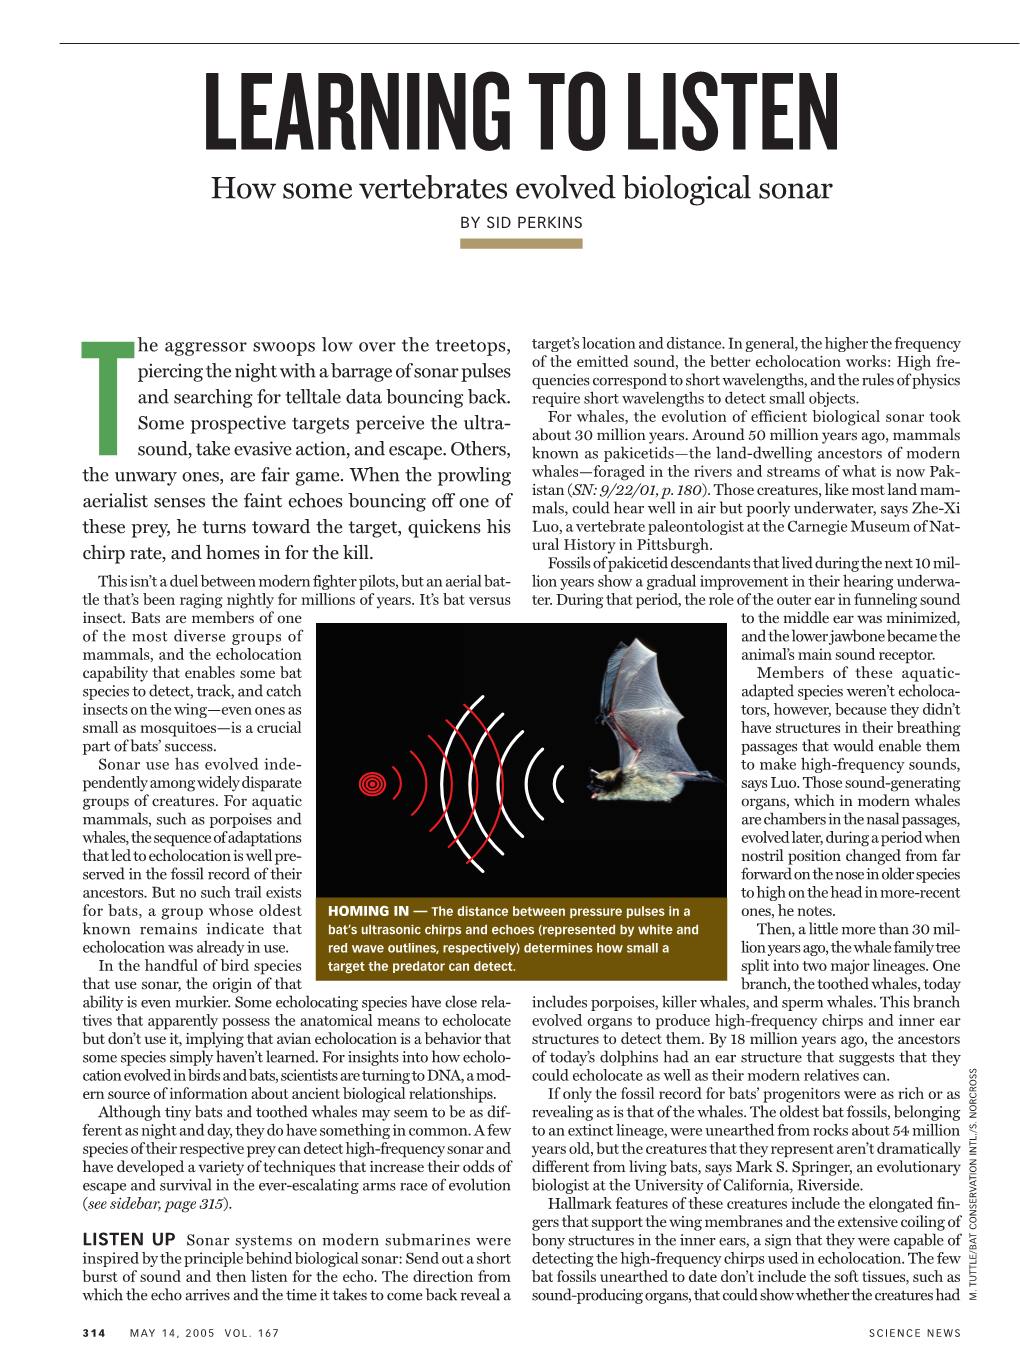 Learning to Listen: How Some Vertebrates Evolved Biological Sonar